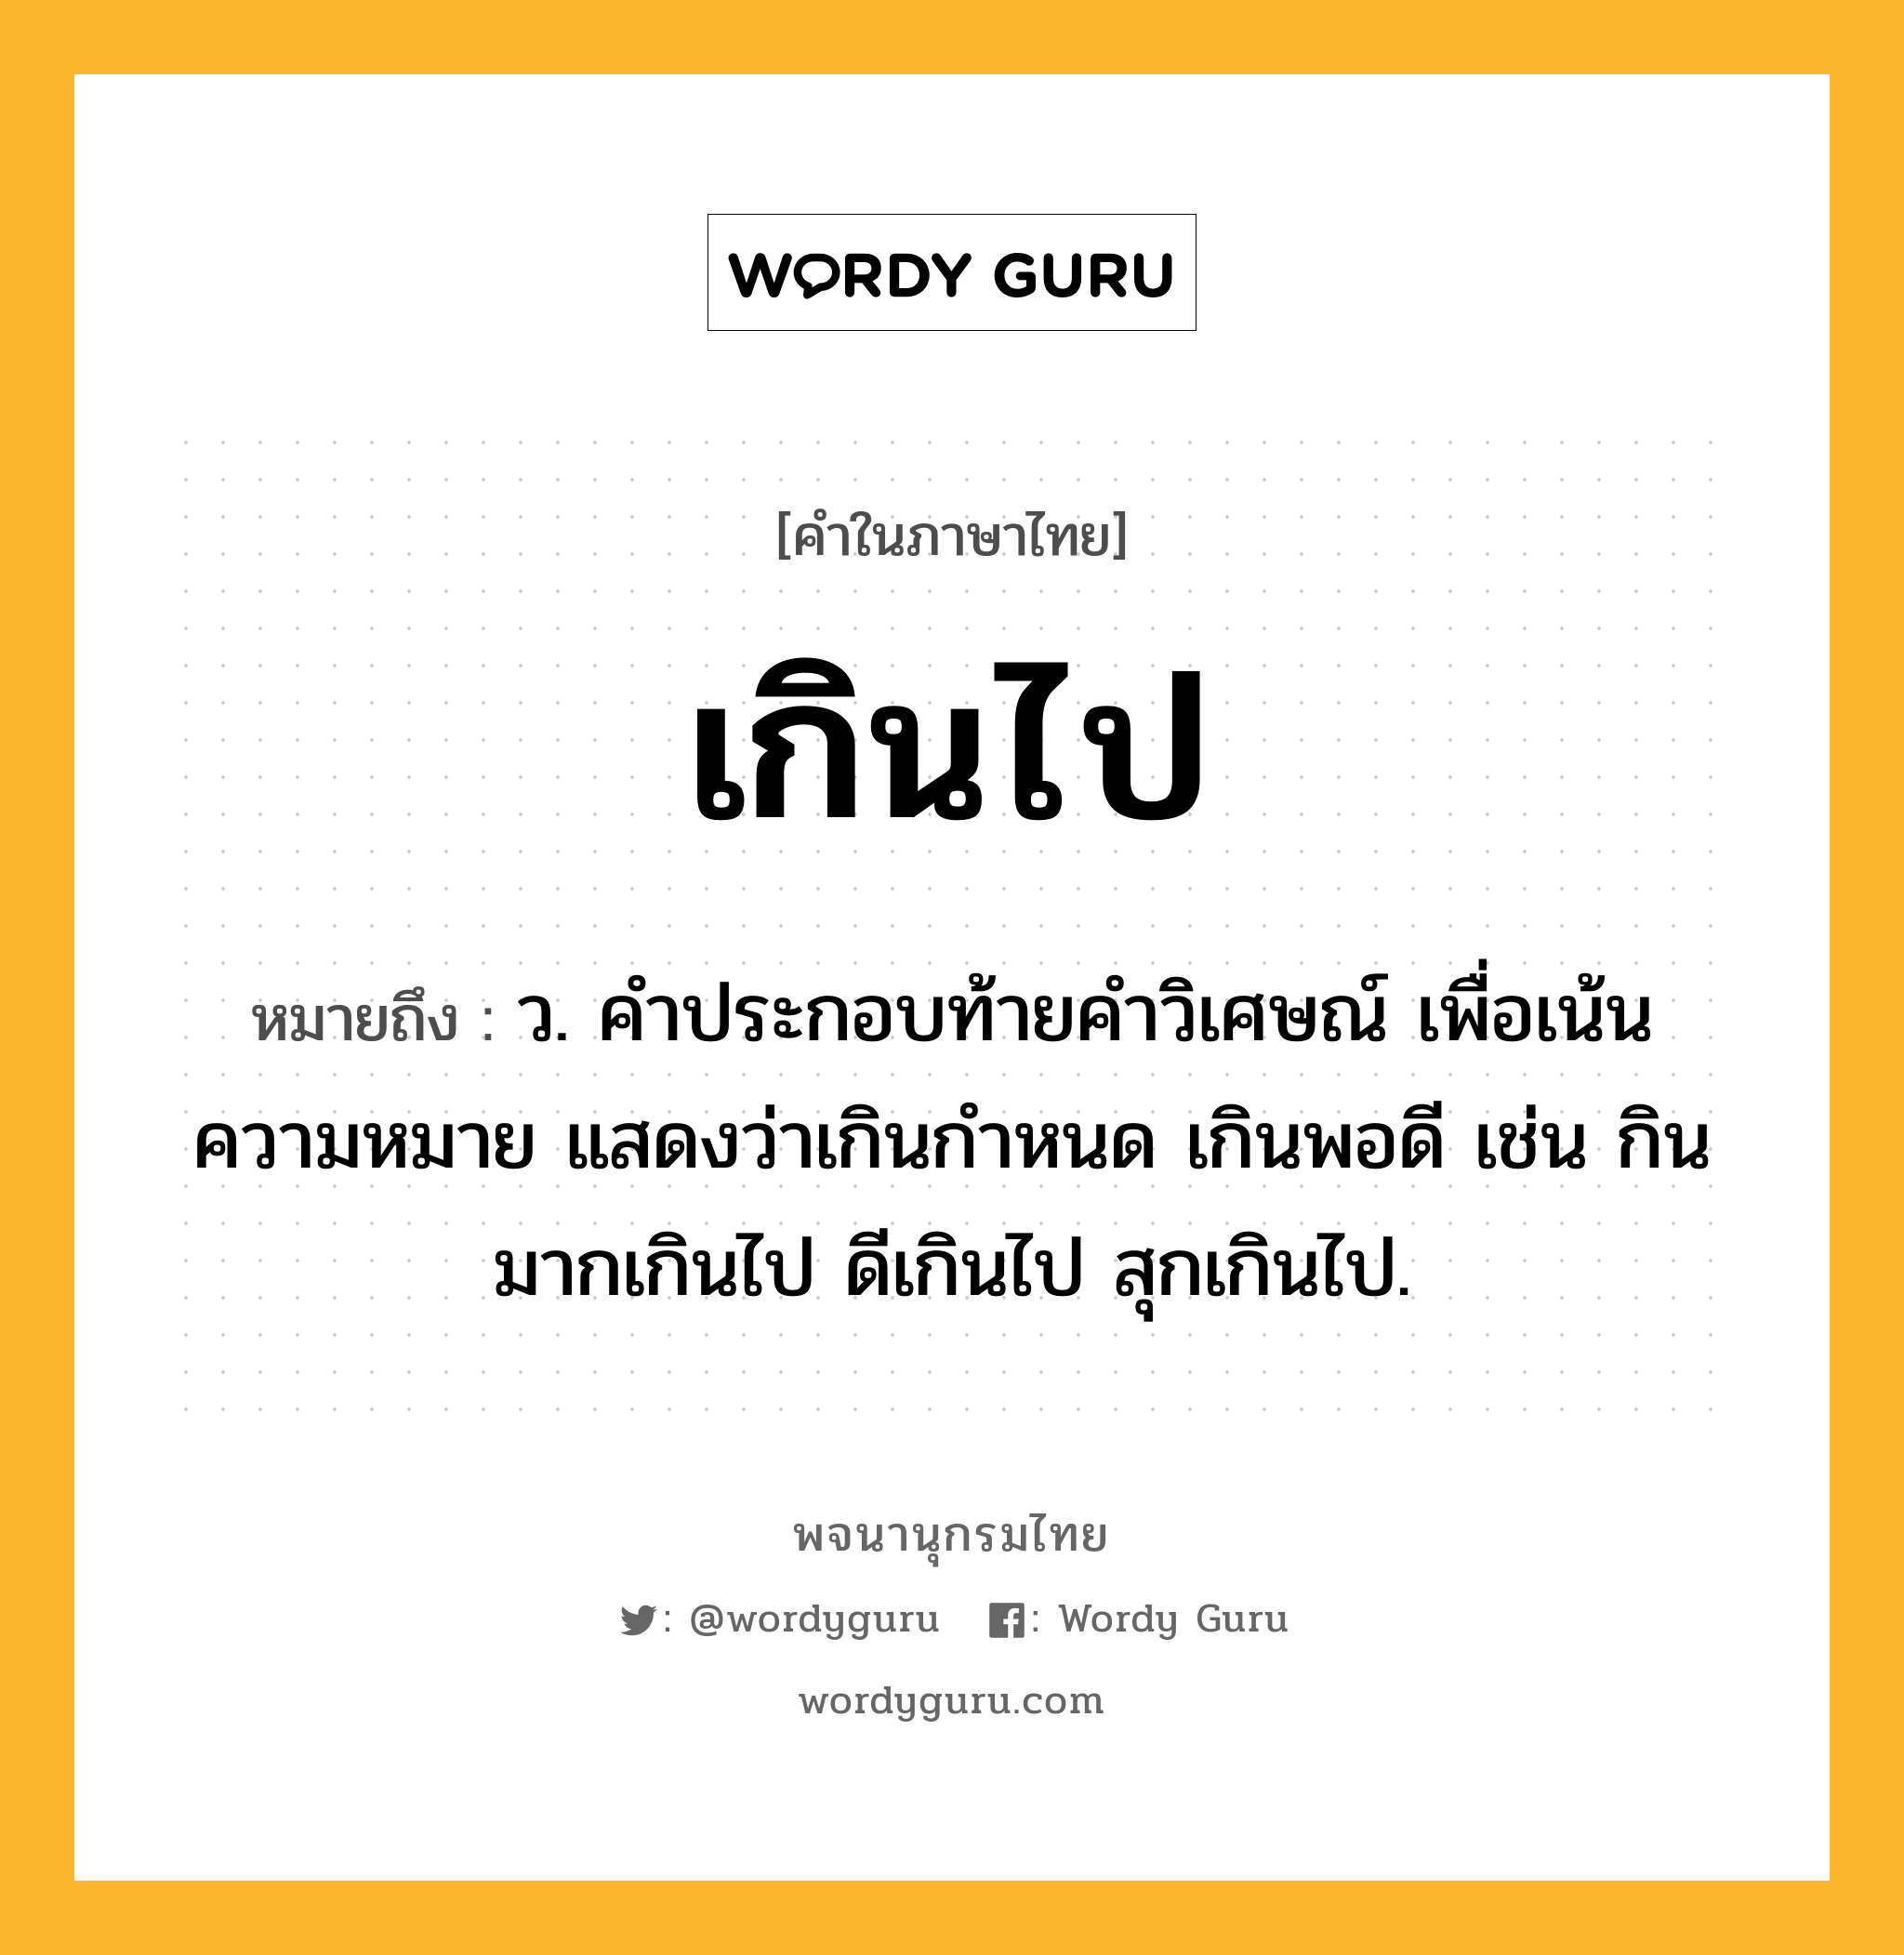 เกินไป หมายถึงอะไร?, คำในภาษาไทย เกินไป หมายถึง ว. คําประกอบท้ายคําวิเศษณ์ เพื่อเน้นความหมาย แสดงว่าเกินกําหนด เกินพอดี เช่น กินมากเกินไป ดีเกินไป สุกเกินไป.